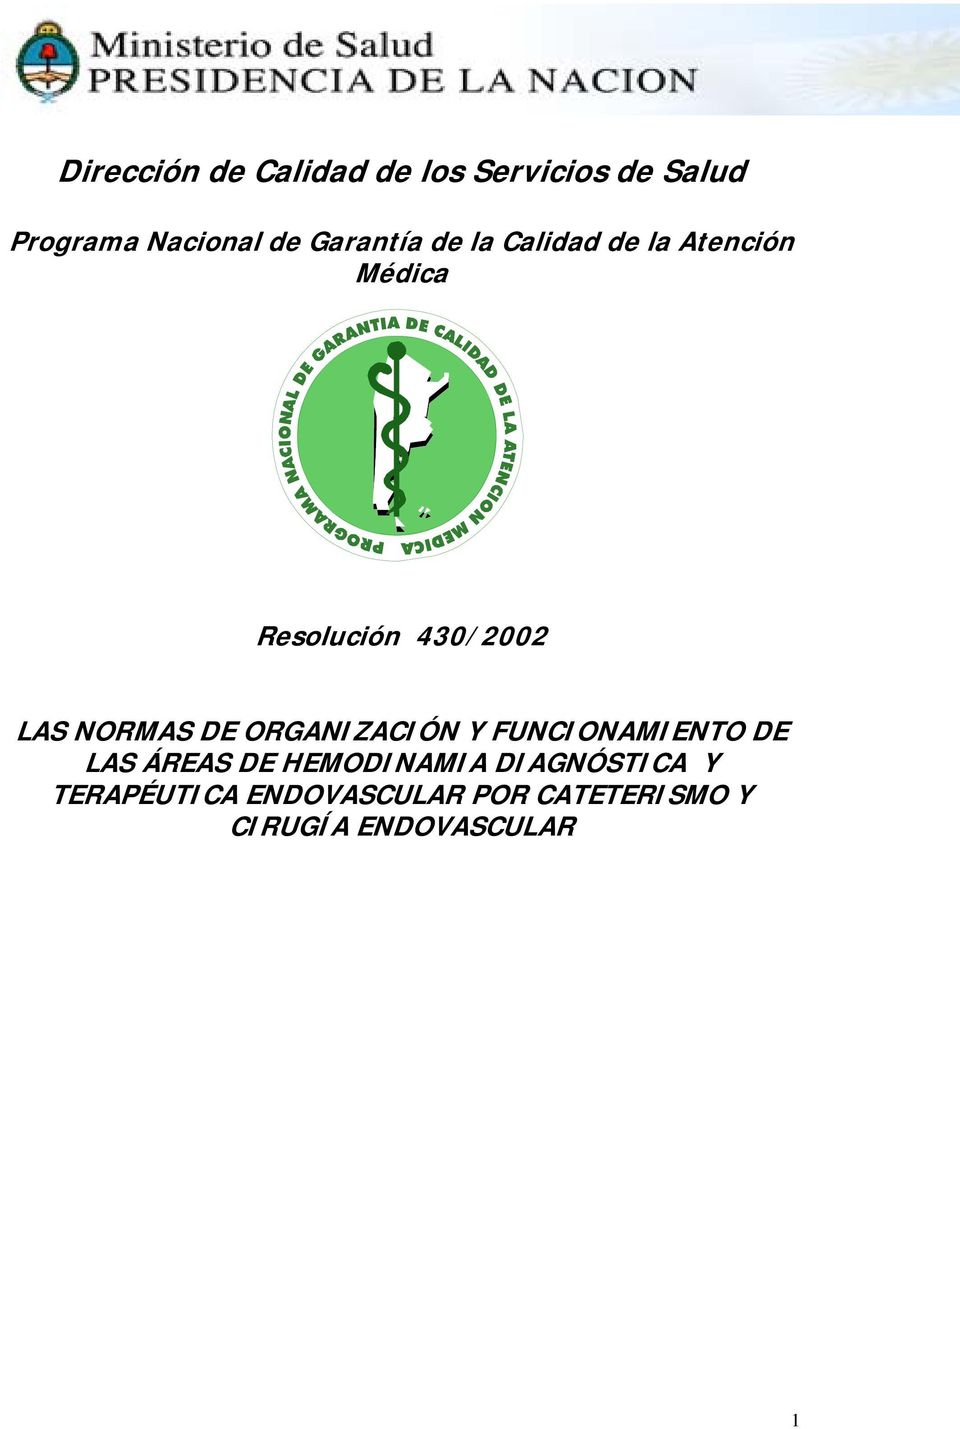 NORMAS DE ORGANIZACIÓN Y FUNCIONAMIENTO DE LAS ÁREAS DE HEMODINAMIA